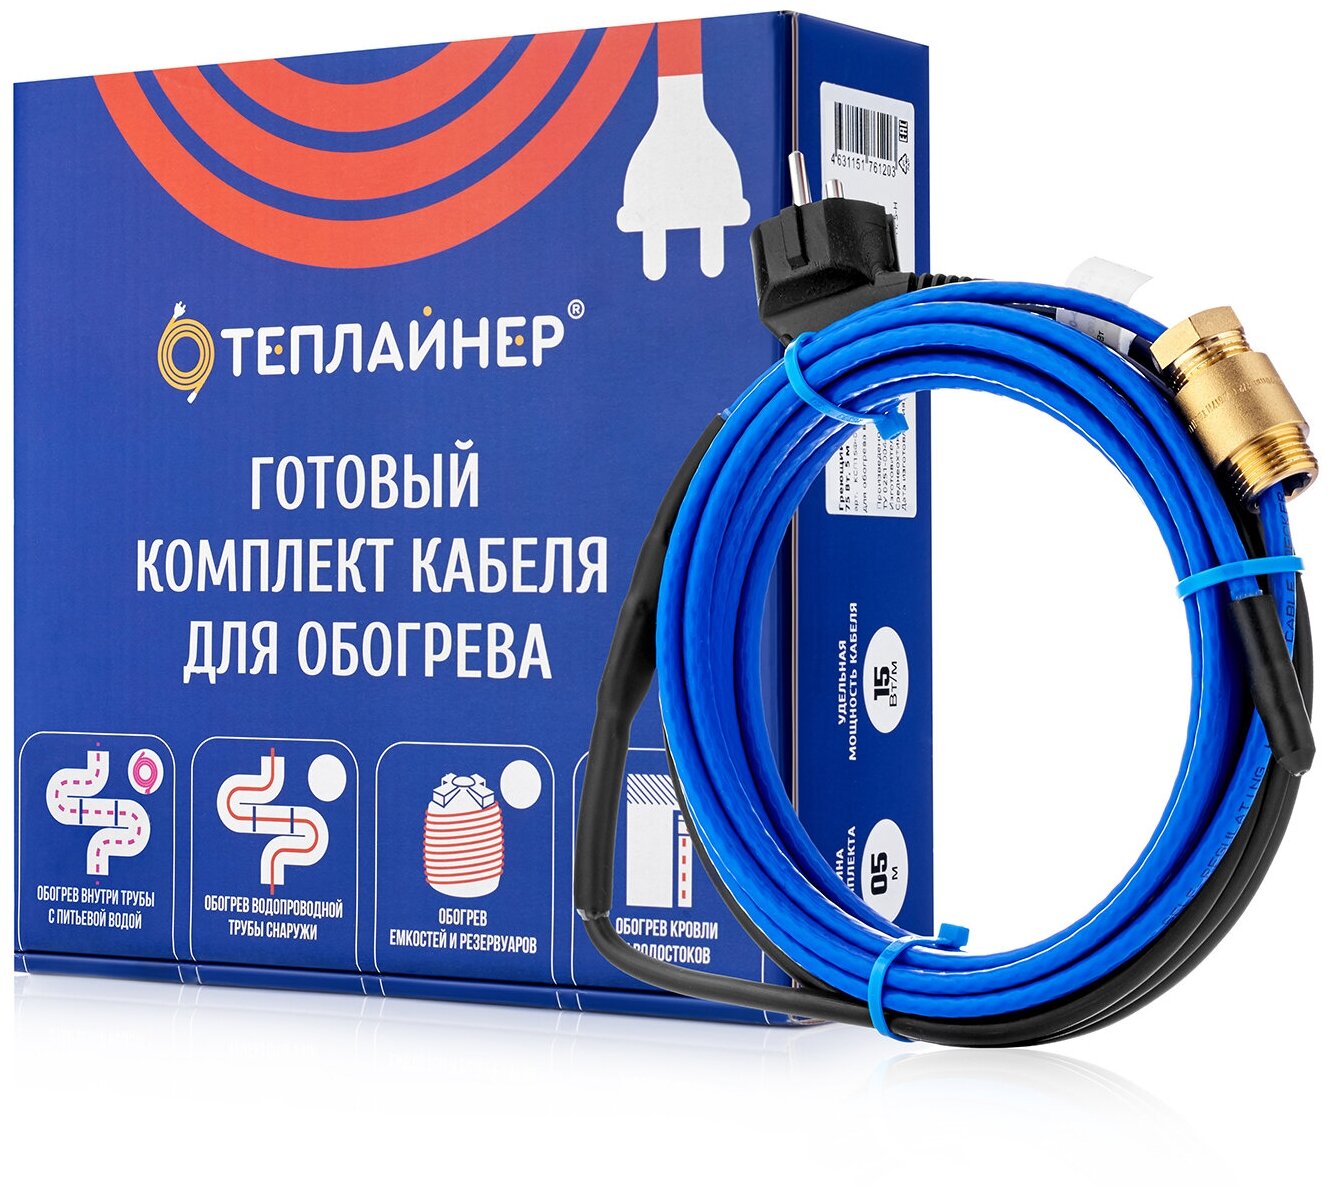 Греющий кабель теплайнер PROFI КСП-10, 450 Вт, 45 м - фотография № 1